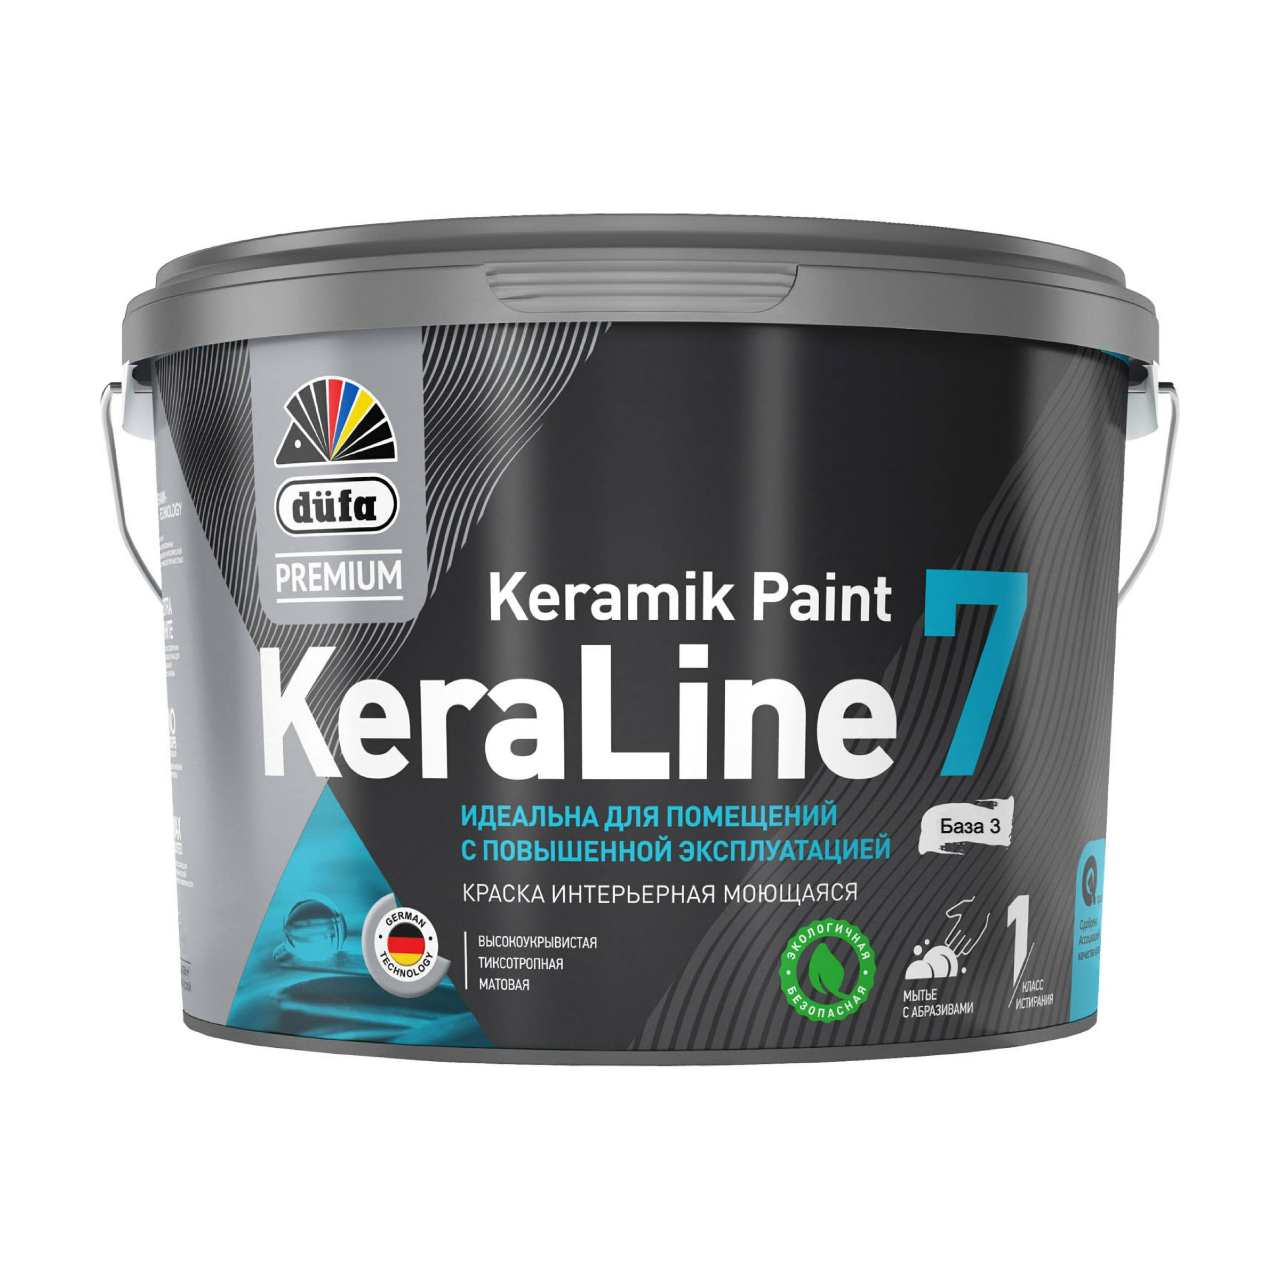 90190605 Краска для стен и потолков моющаяся Premium KeraLine Keramik Paint 7 матовая прозрачная база 3 9 л STLM-0126757 DUFA